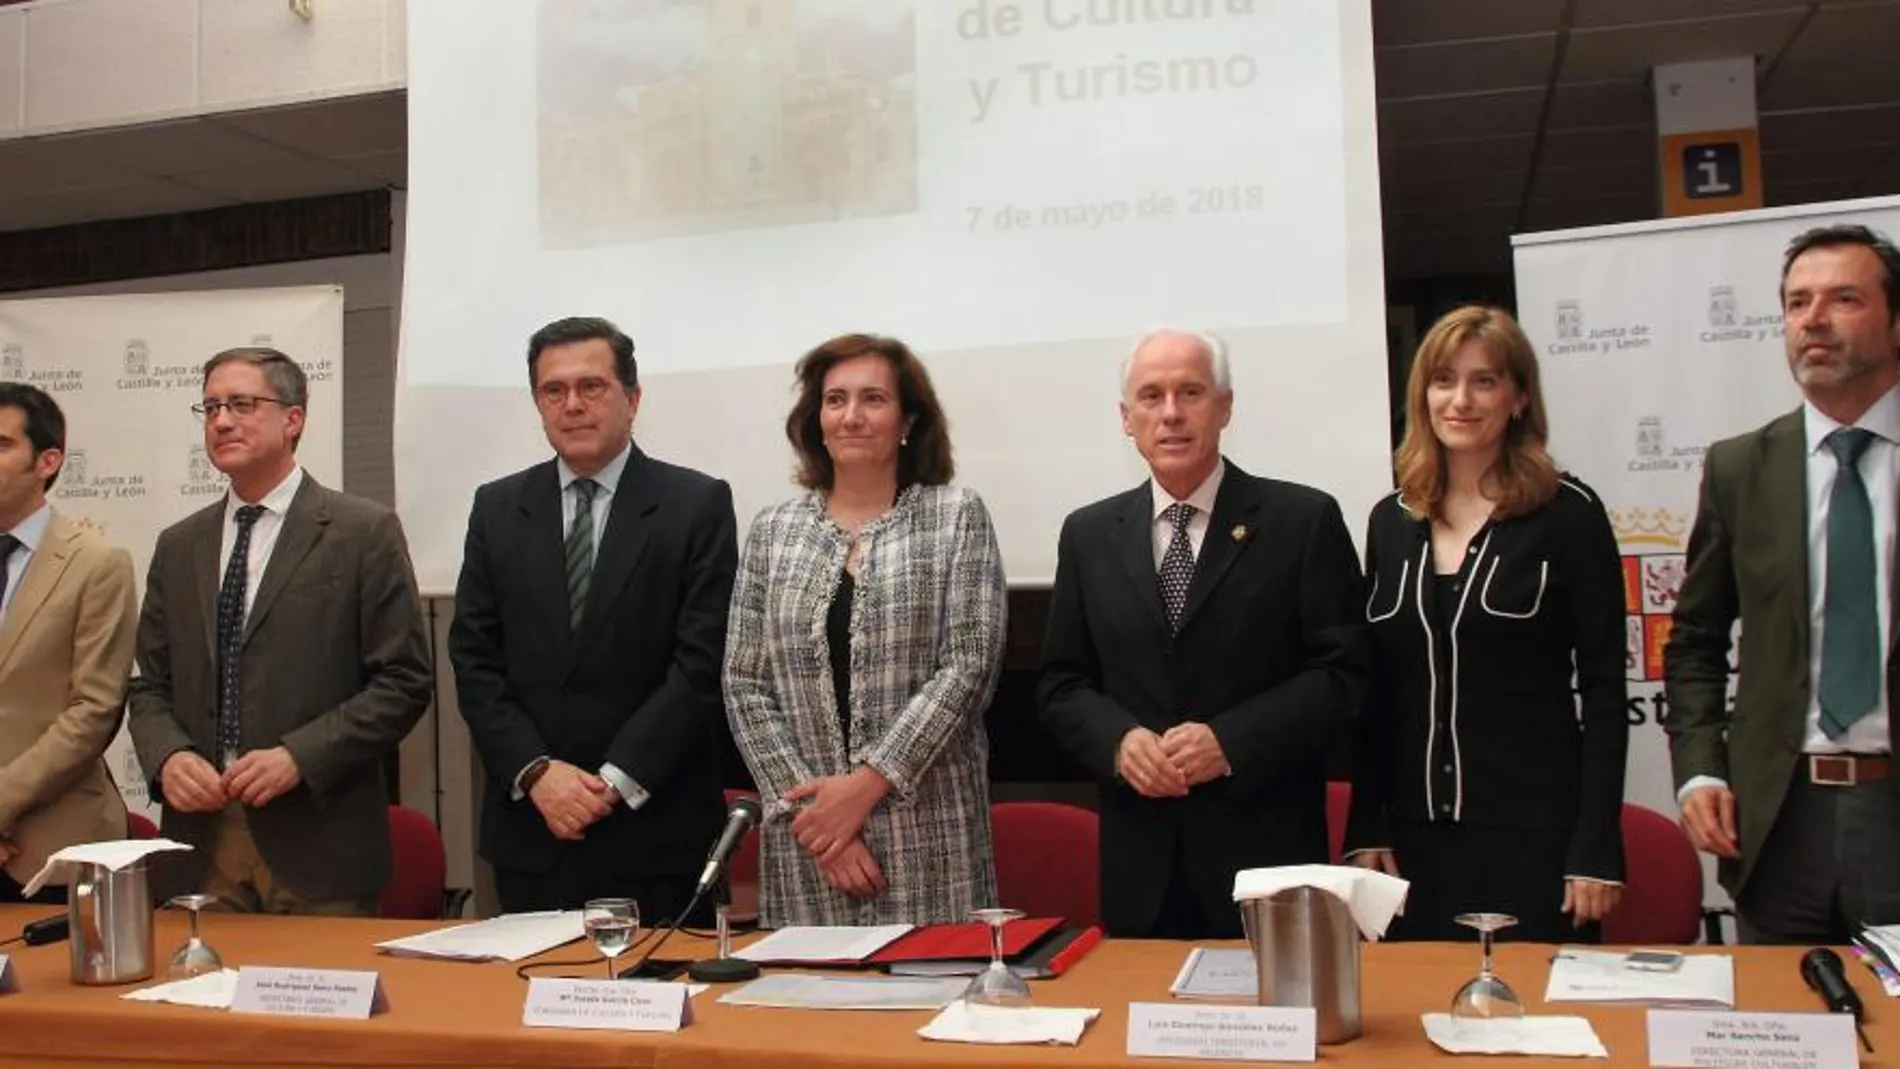 La consejera de Cultura y Turismo, María Josefa García Cirac, y el equipo directivo de su departamento / Brágimo/Ical